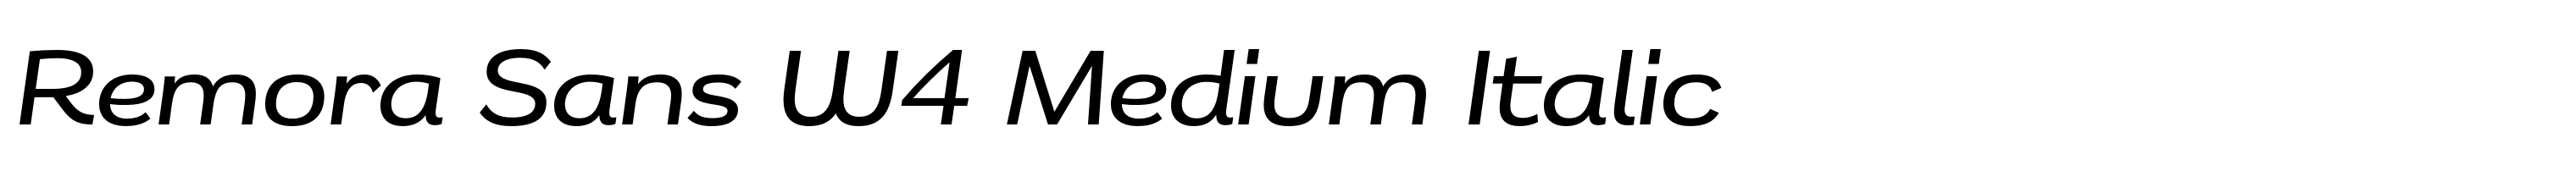 Remora Sans W4 Medium Italic